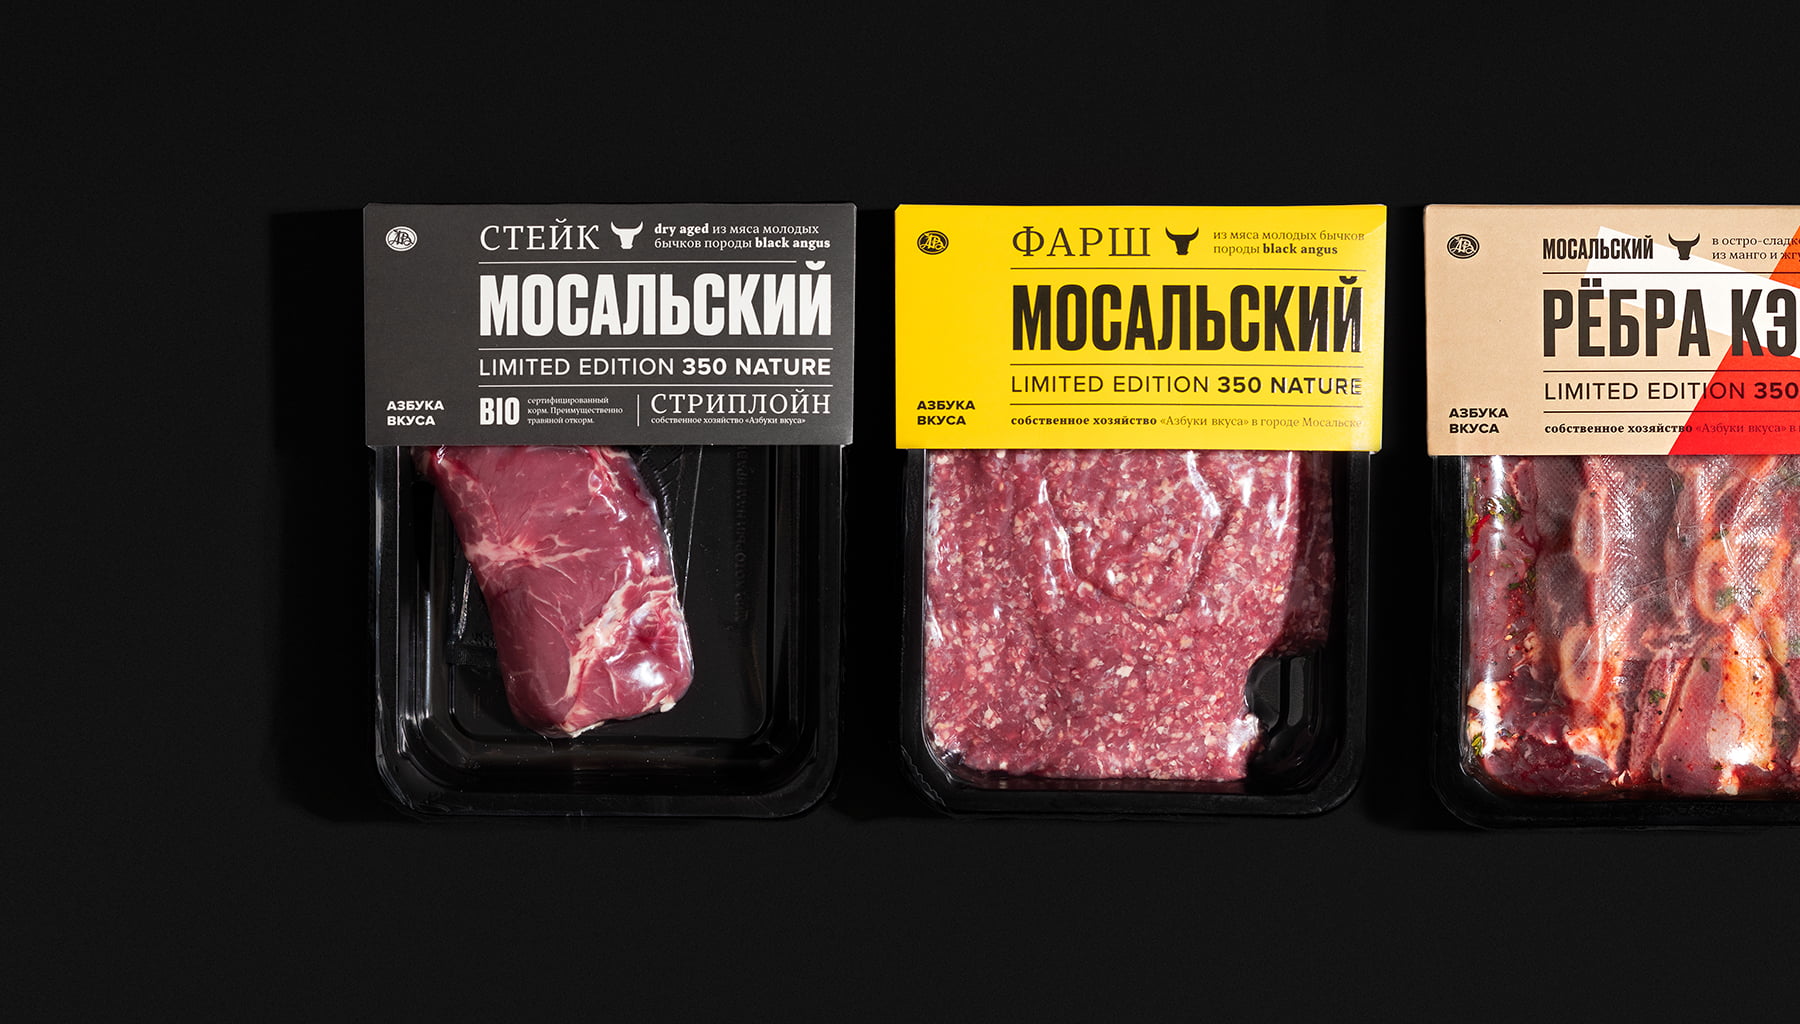 肉制品包装设计